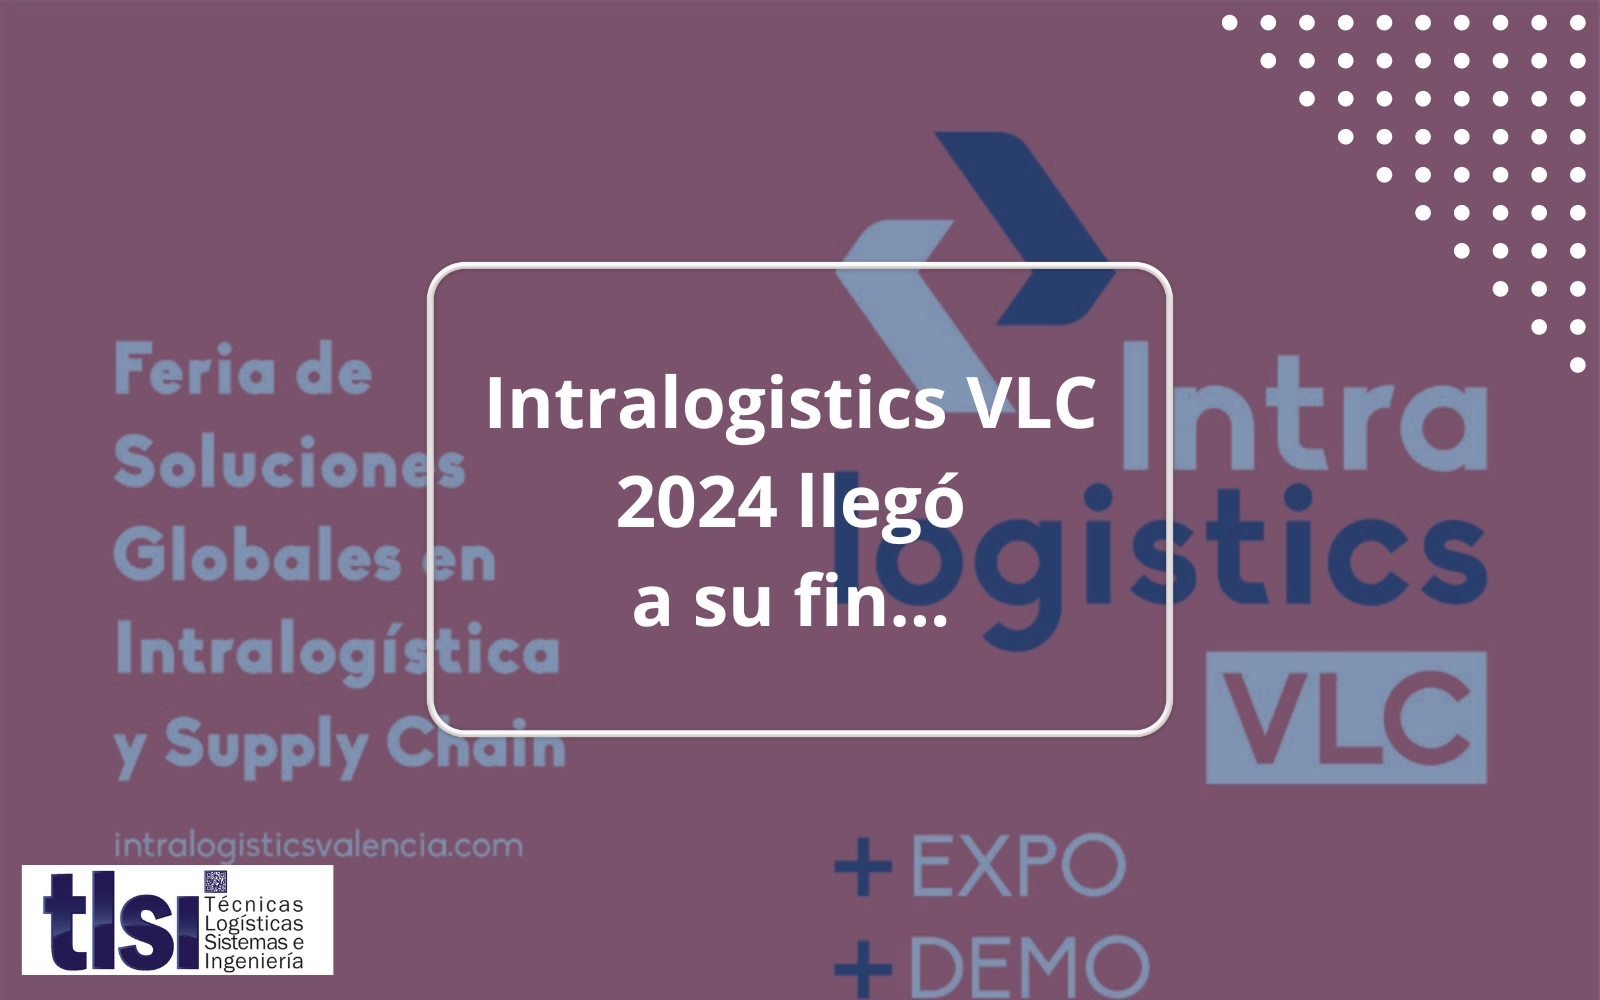 Intralogistics VLC 2024